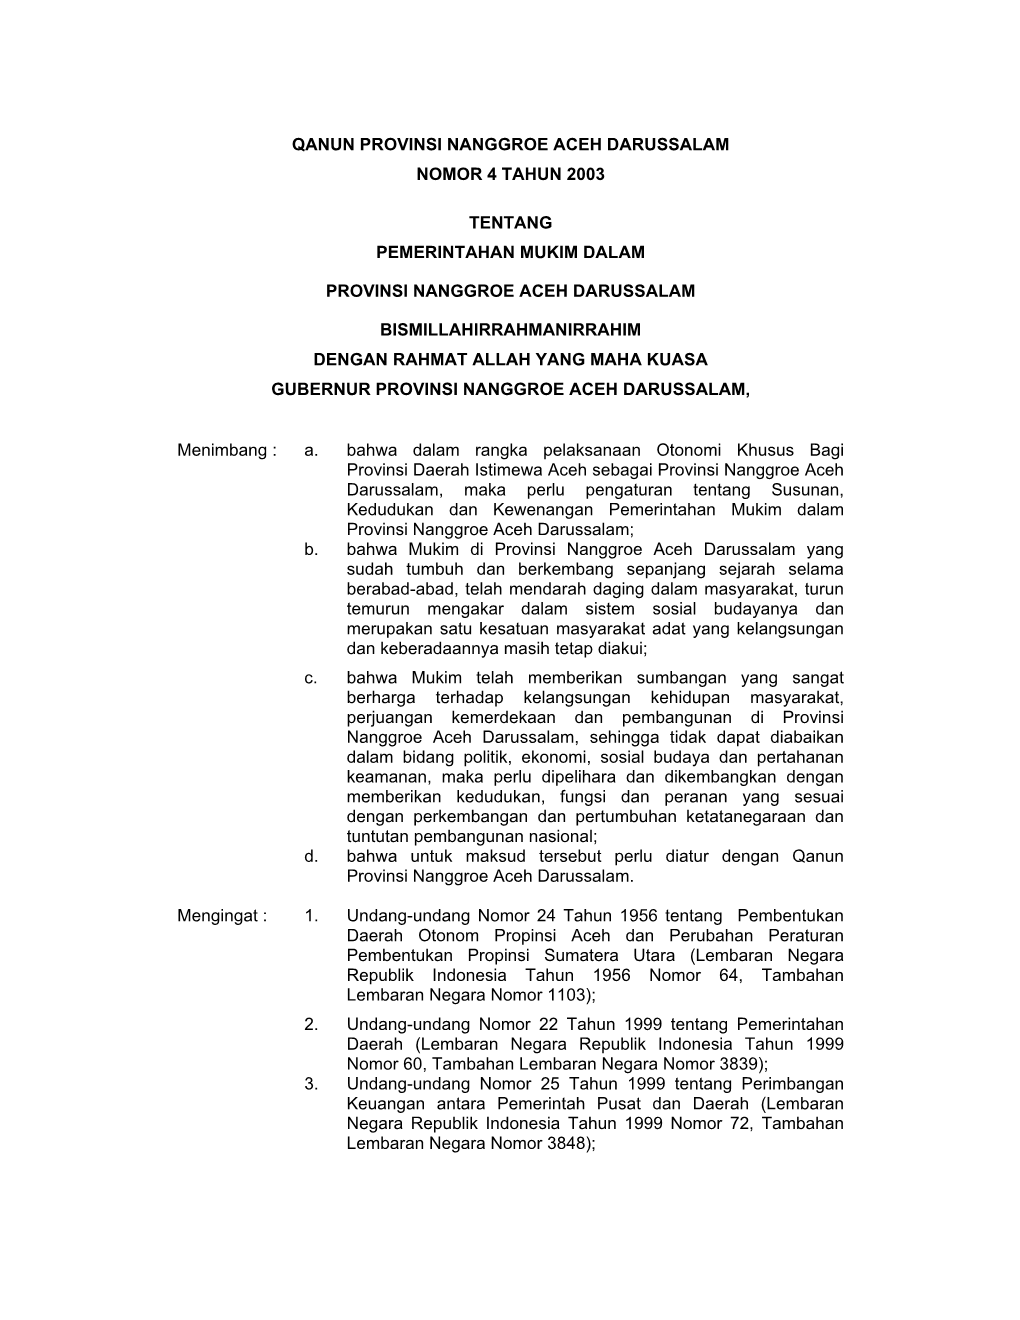 Qanun Provinsi Nanggroe Aceh Darussalam Nomor 4 Tahun 2003